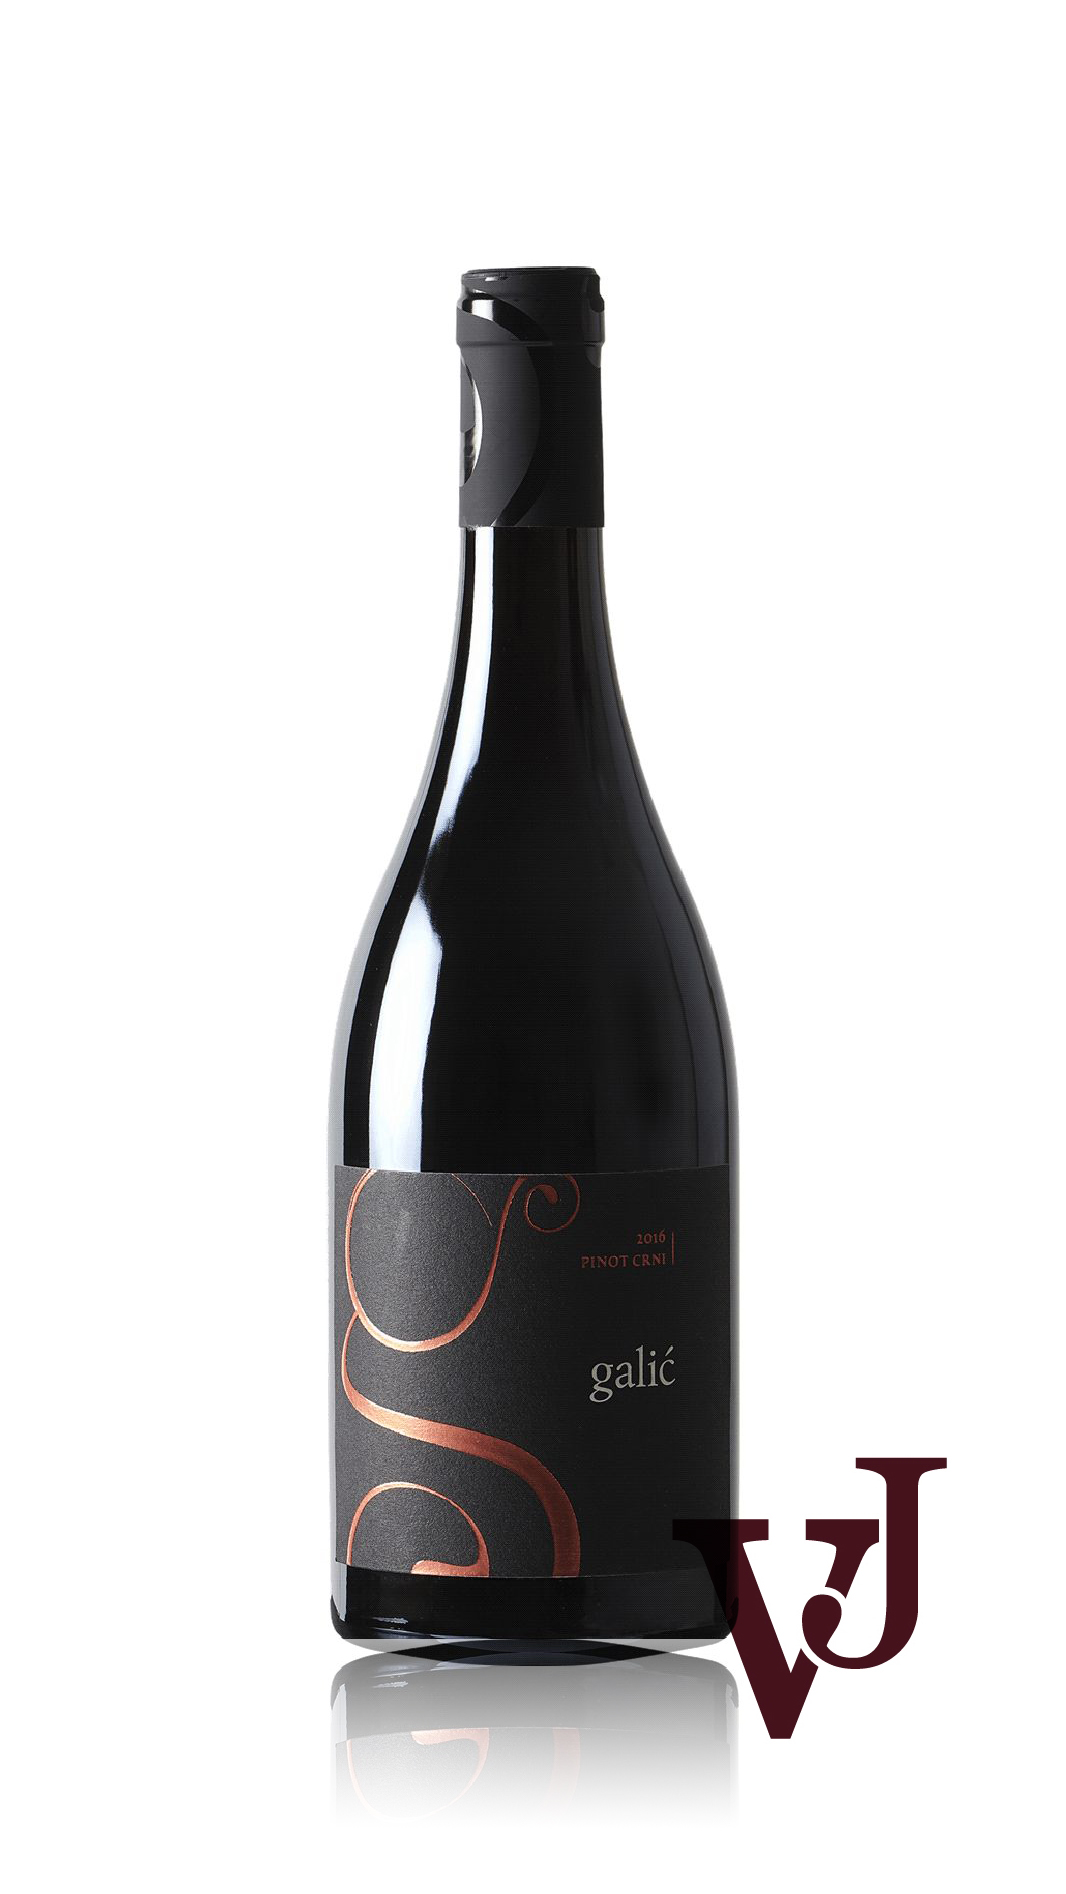 Rött Vin - Galic Pinot Noir 2018 artikel nummer 5914001 från producenten Galic d.o.o från Kroatien.